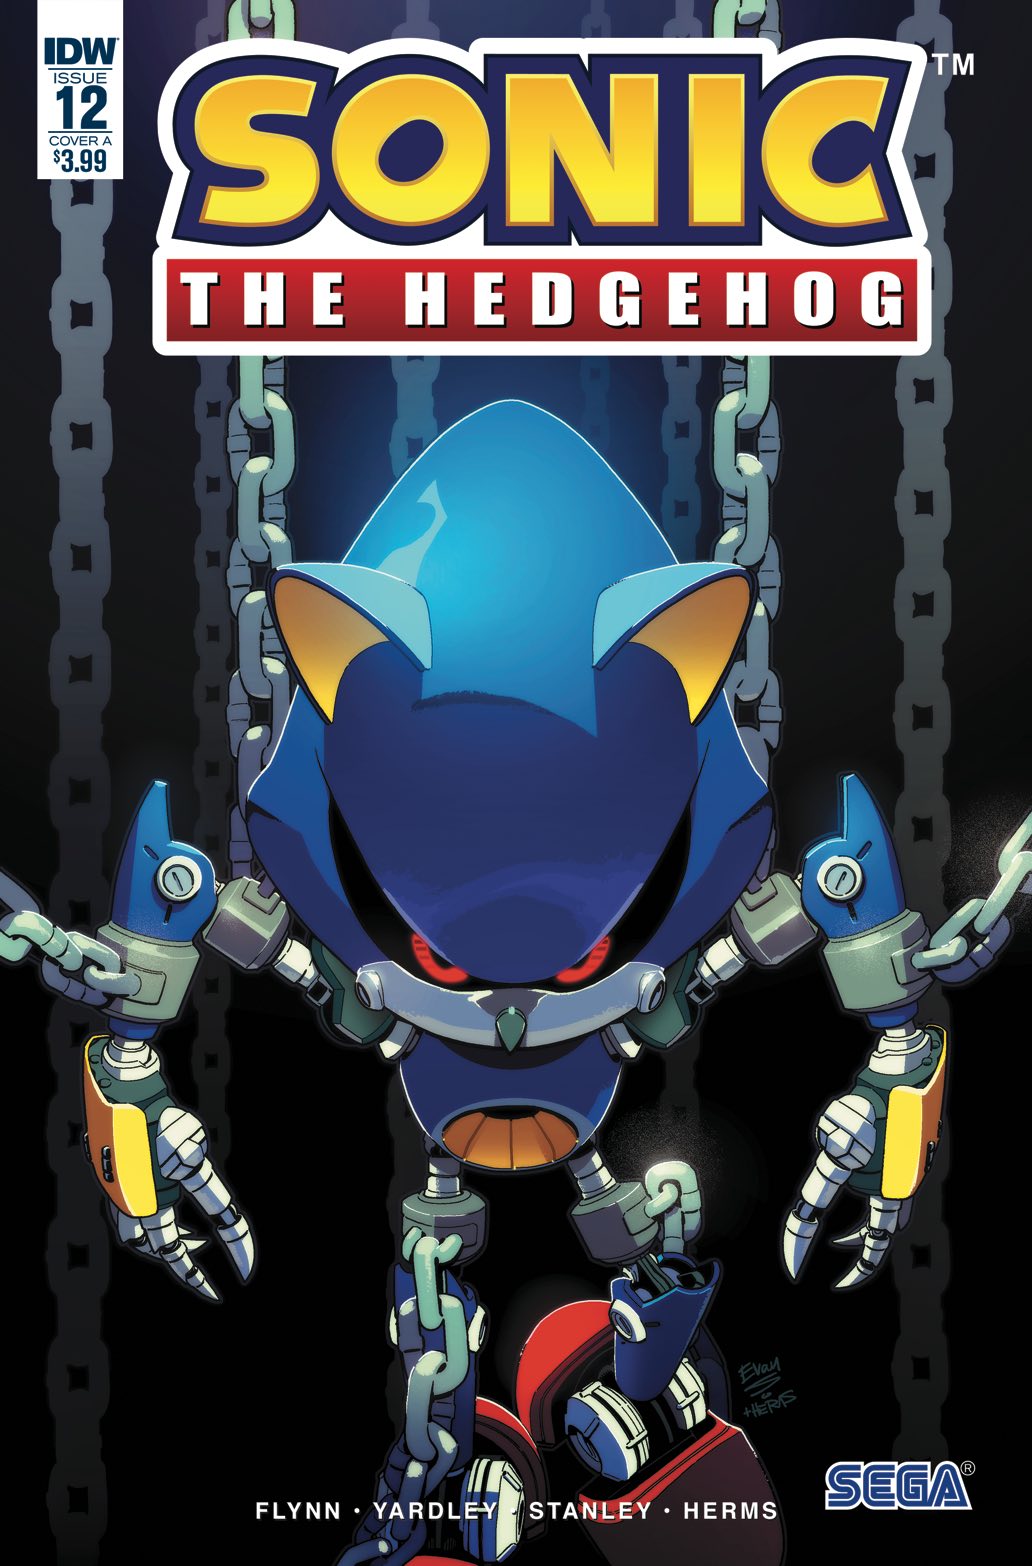 História Metal Sonic-De Insubordinado a Rebelde - Até o herói precisa de  resgate - História escrita por Mr_Yang - Spirit Fanfics e Histórias